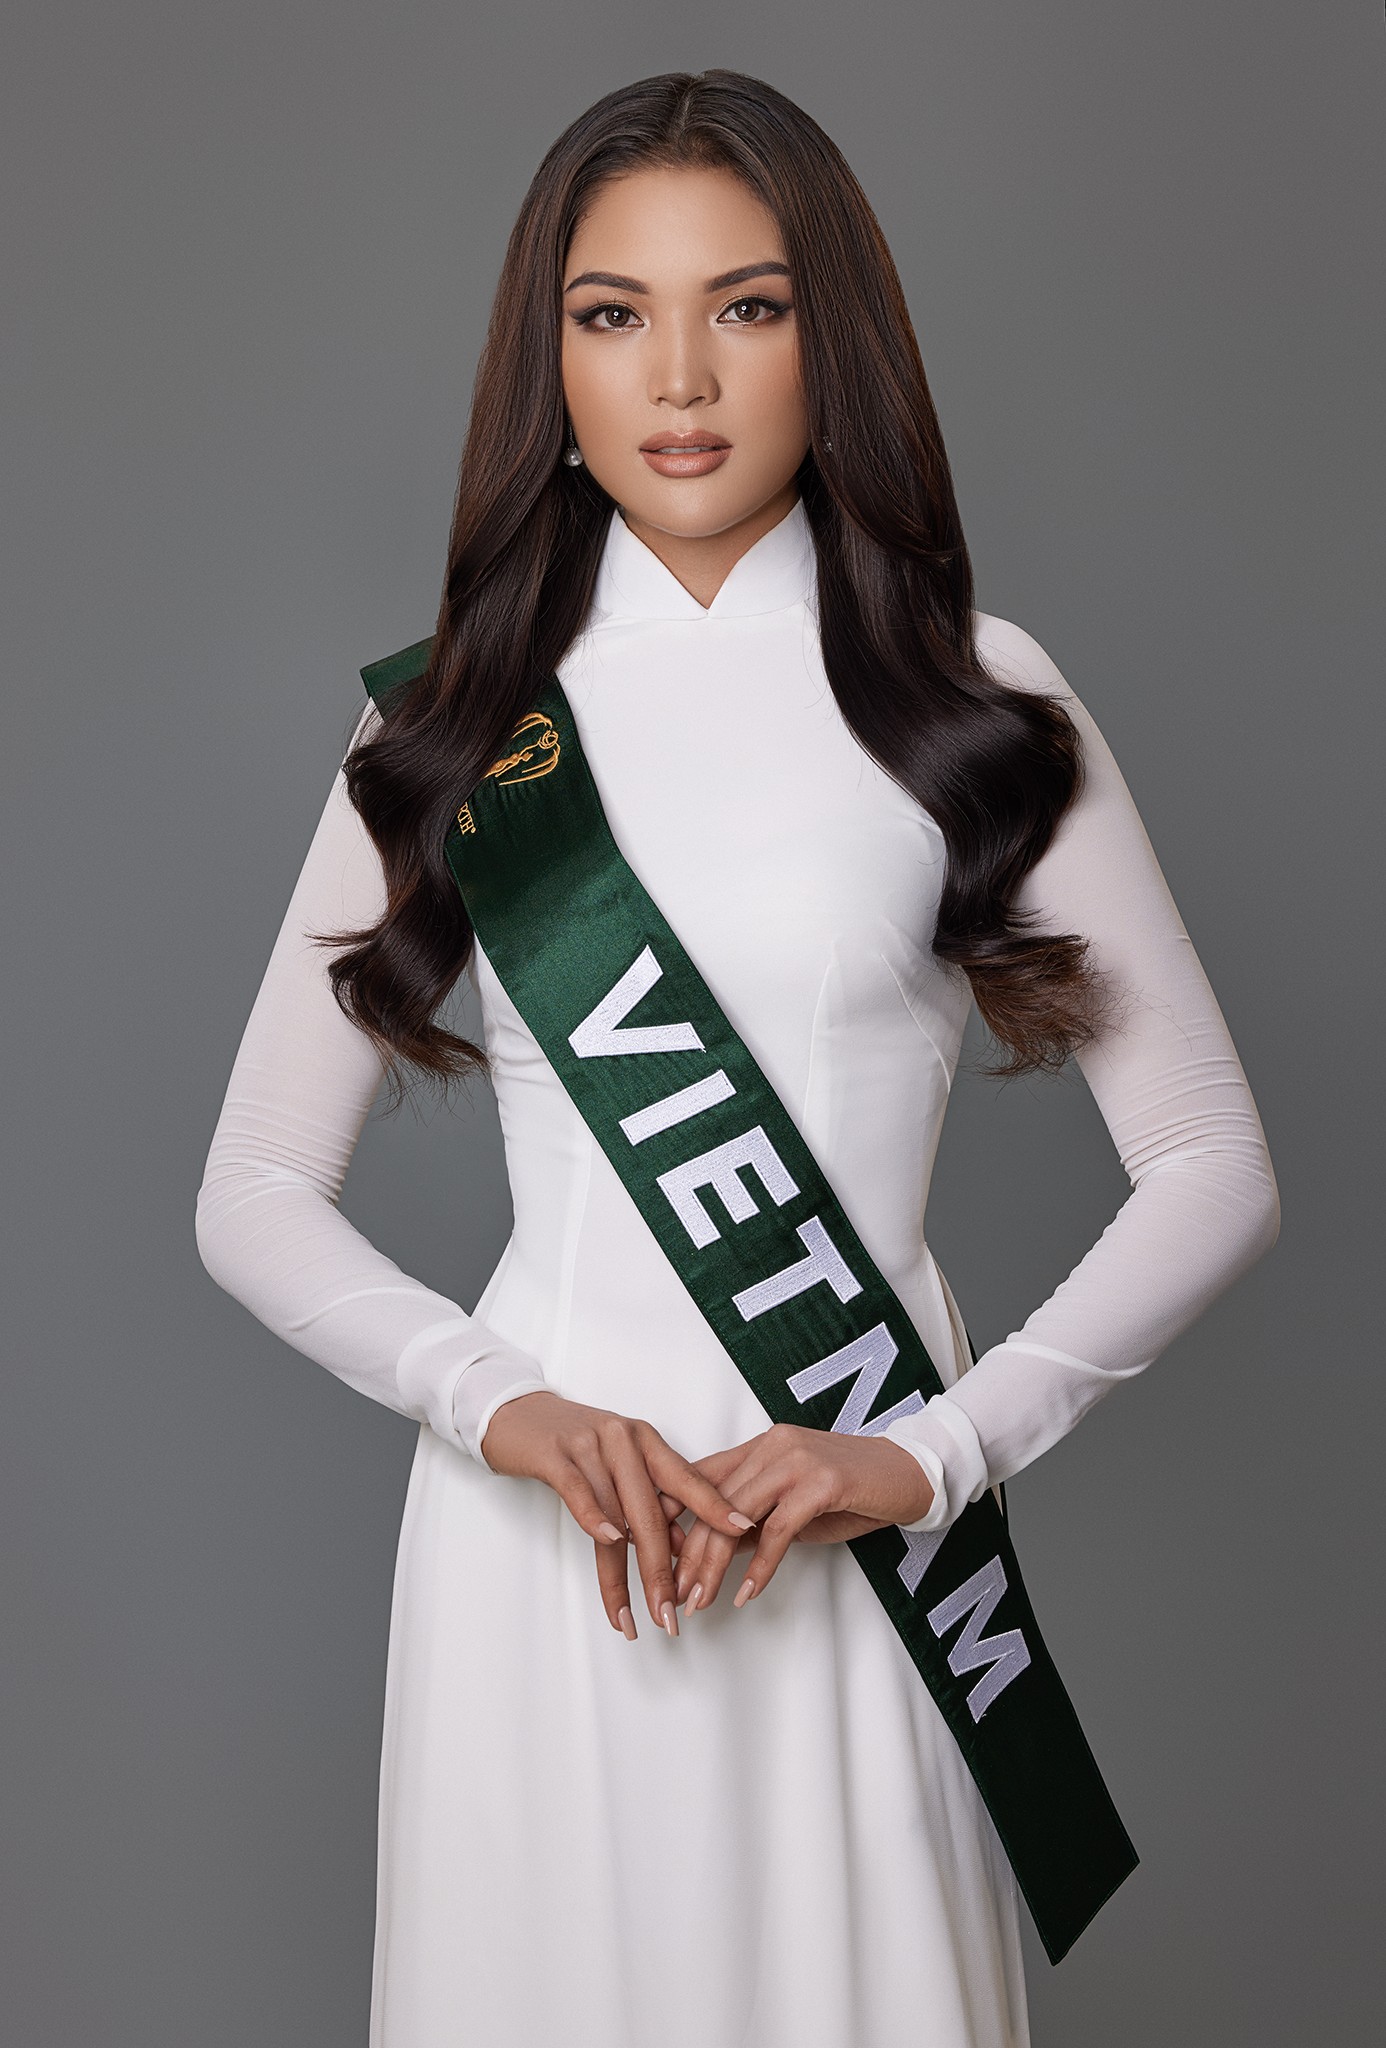 Vì sao người đẹp Vân Anh được lựa chọn dự thi Miss Earth 2021? - Ảnh 2.